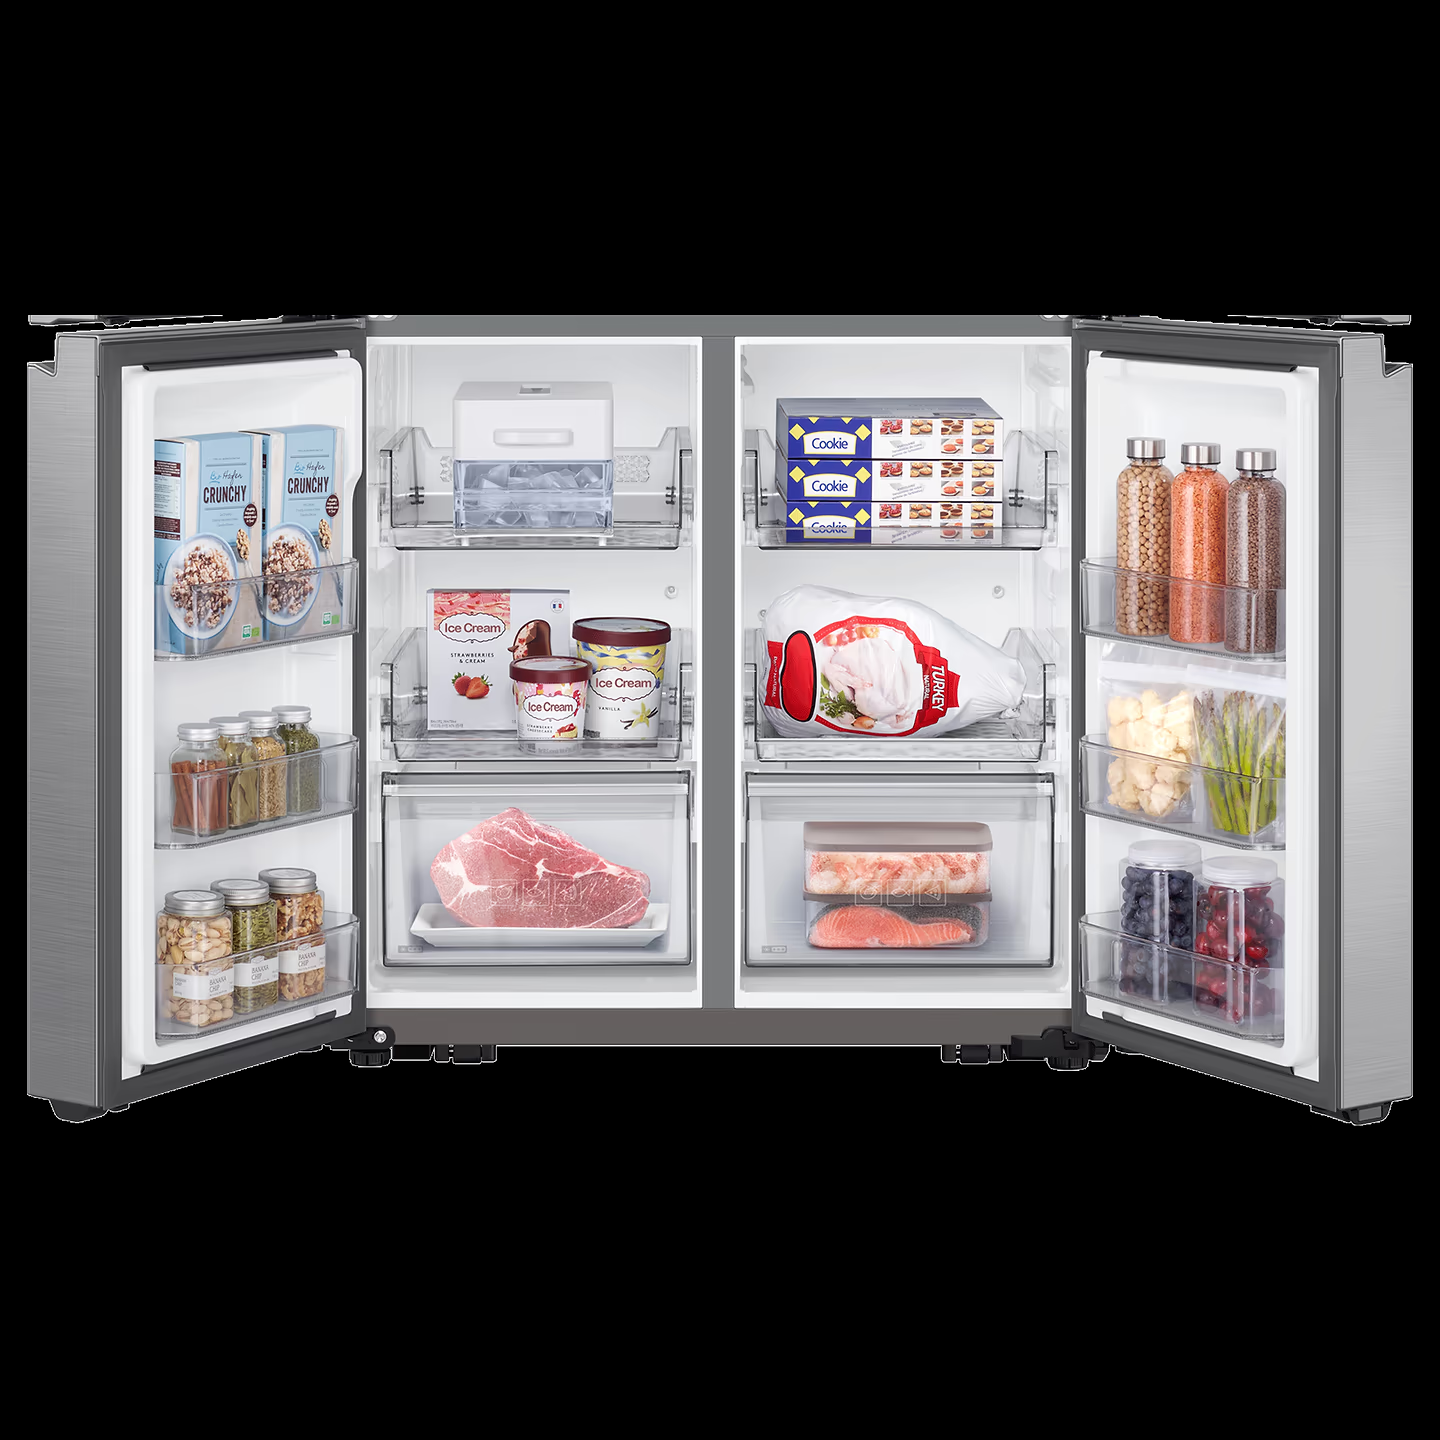 Samsung Refrigerator RF70A90T0SL 705L Dual Flex Zone Side By Side